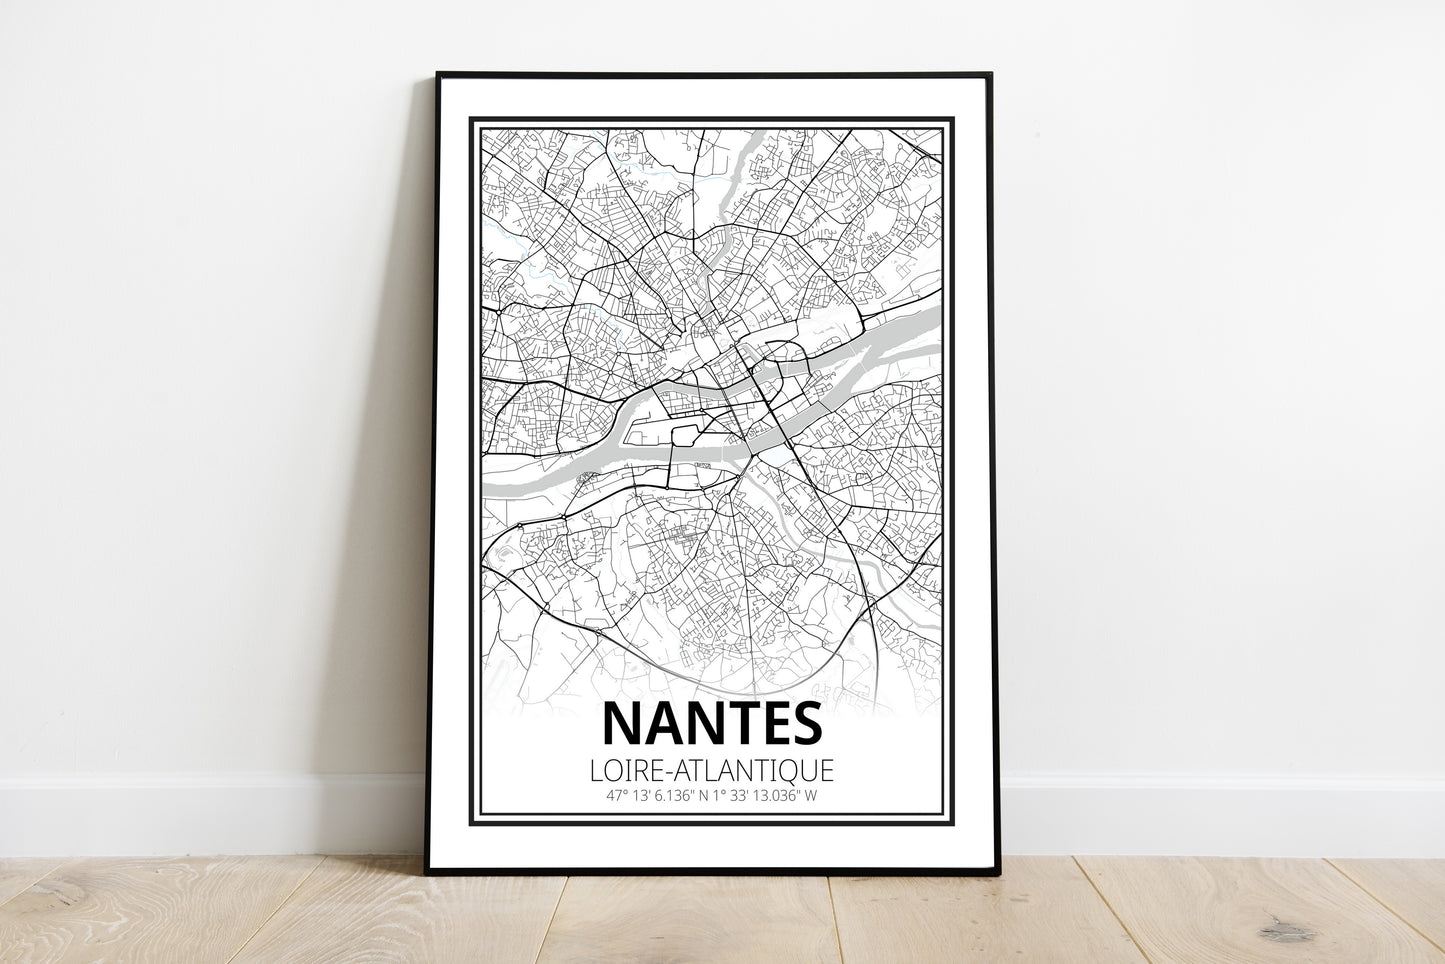 Nantes - Loire-Atlantique